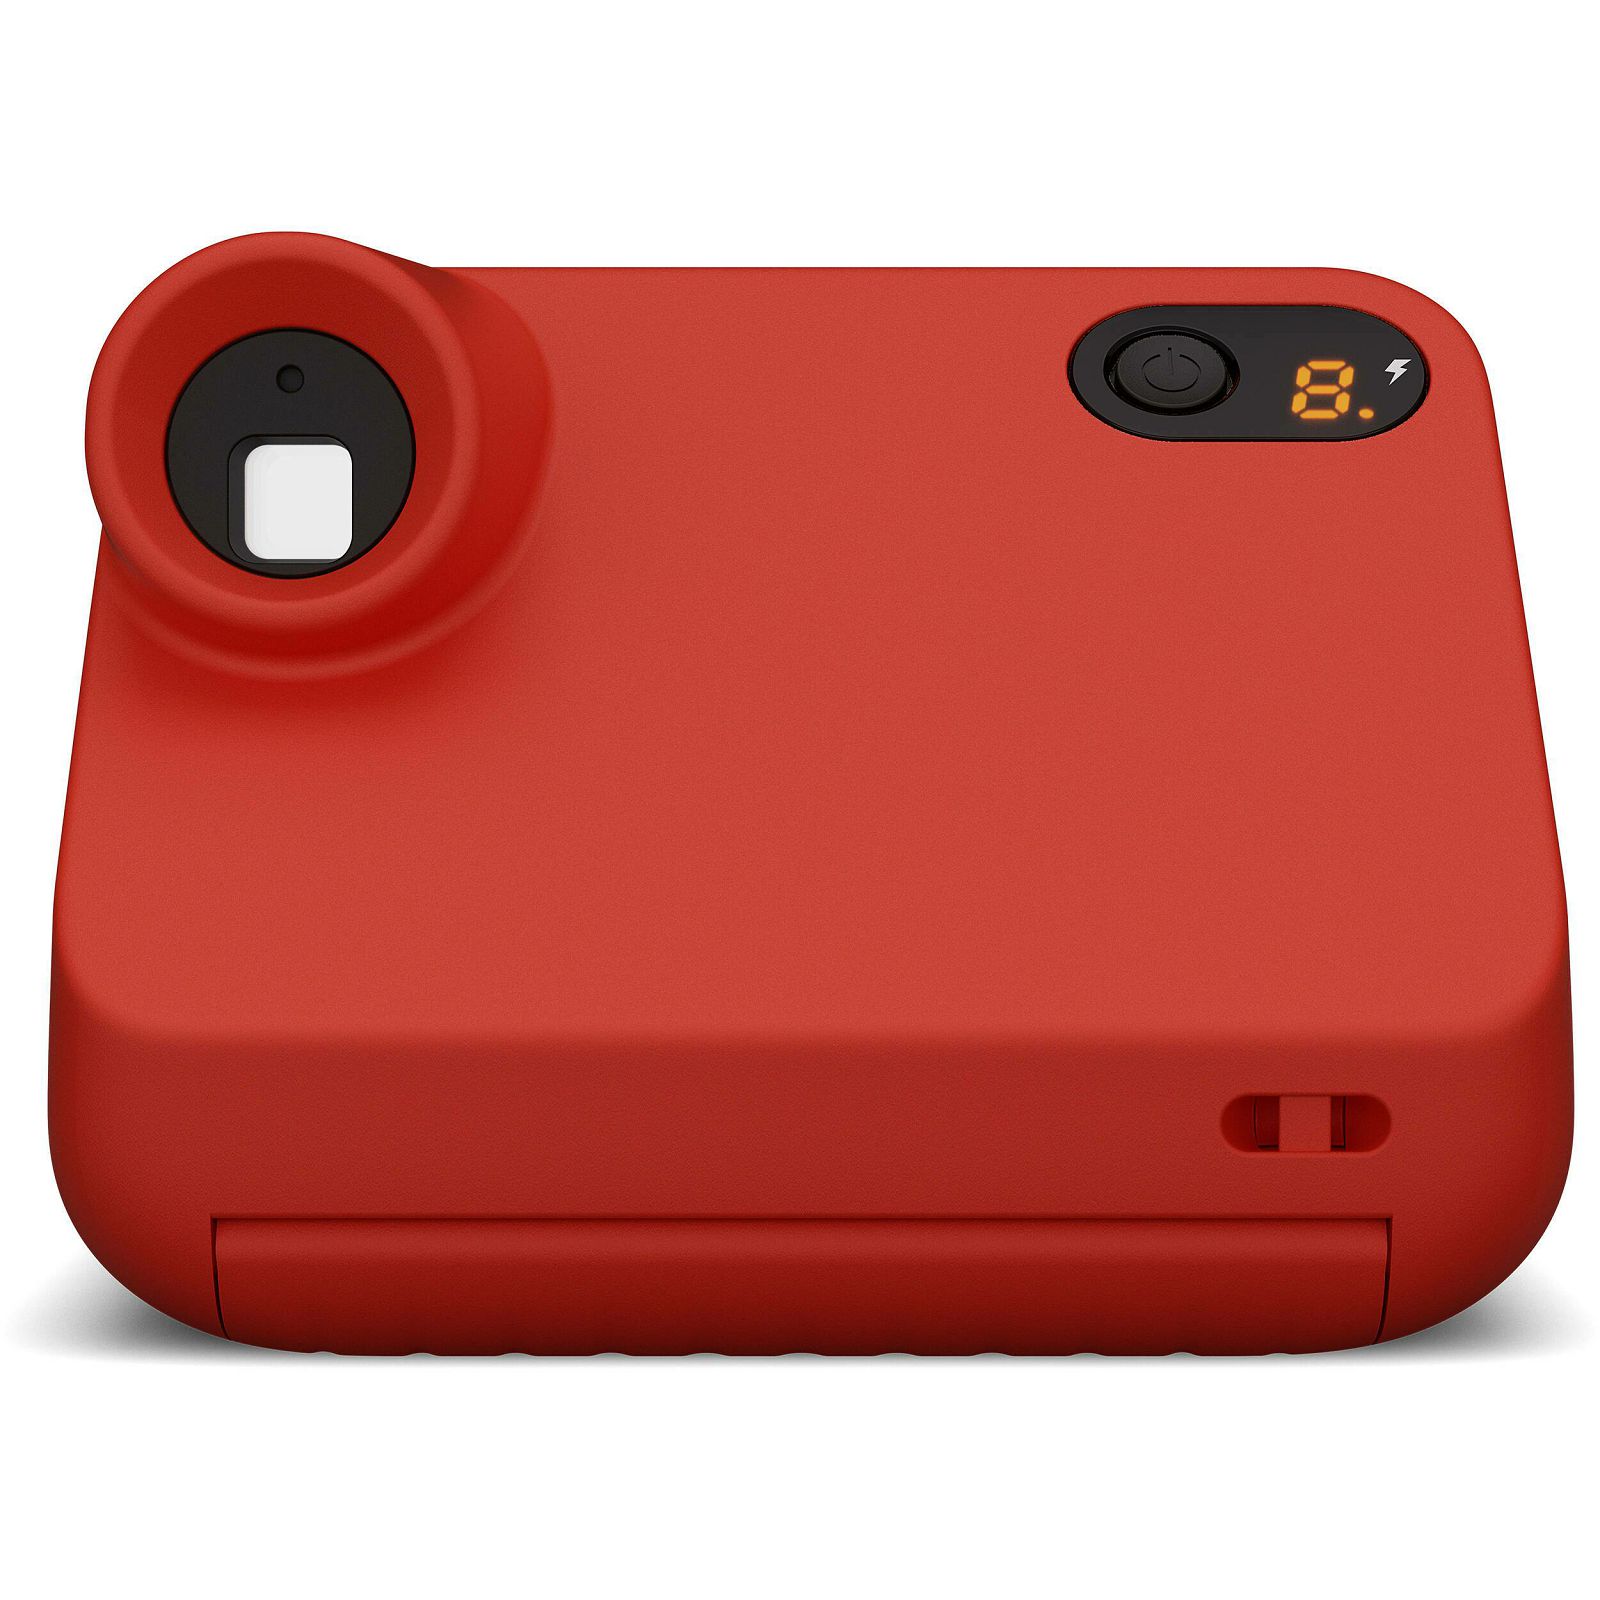 Polaroid Originals Go 2 Red instant fotoaparat s trenutnim ispisom fotografije (009098) 